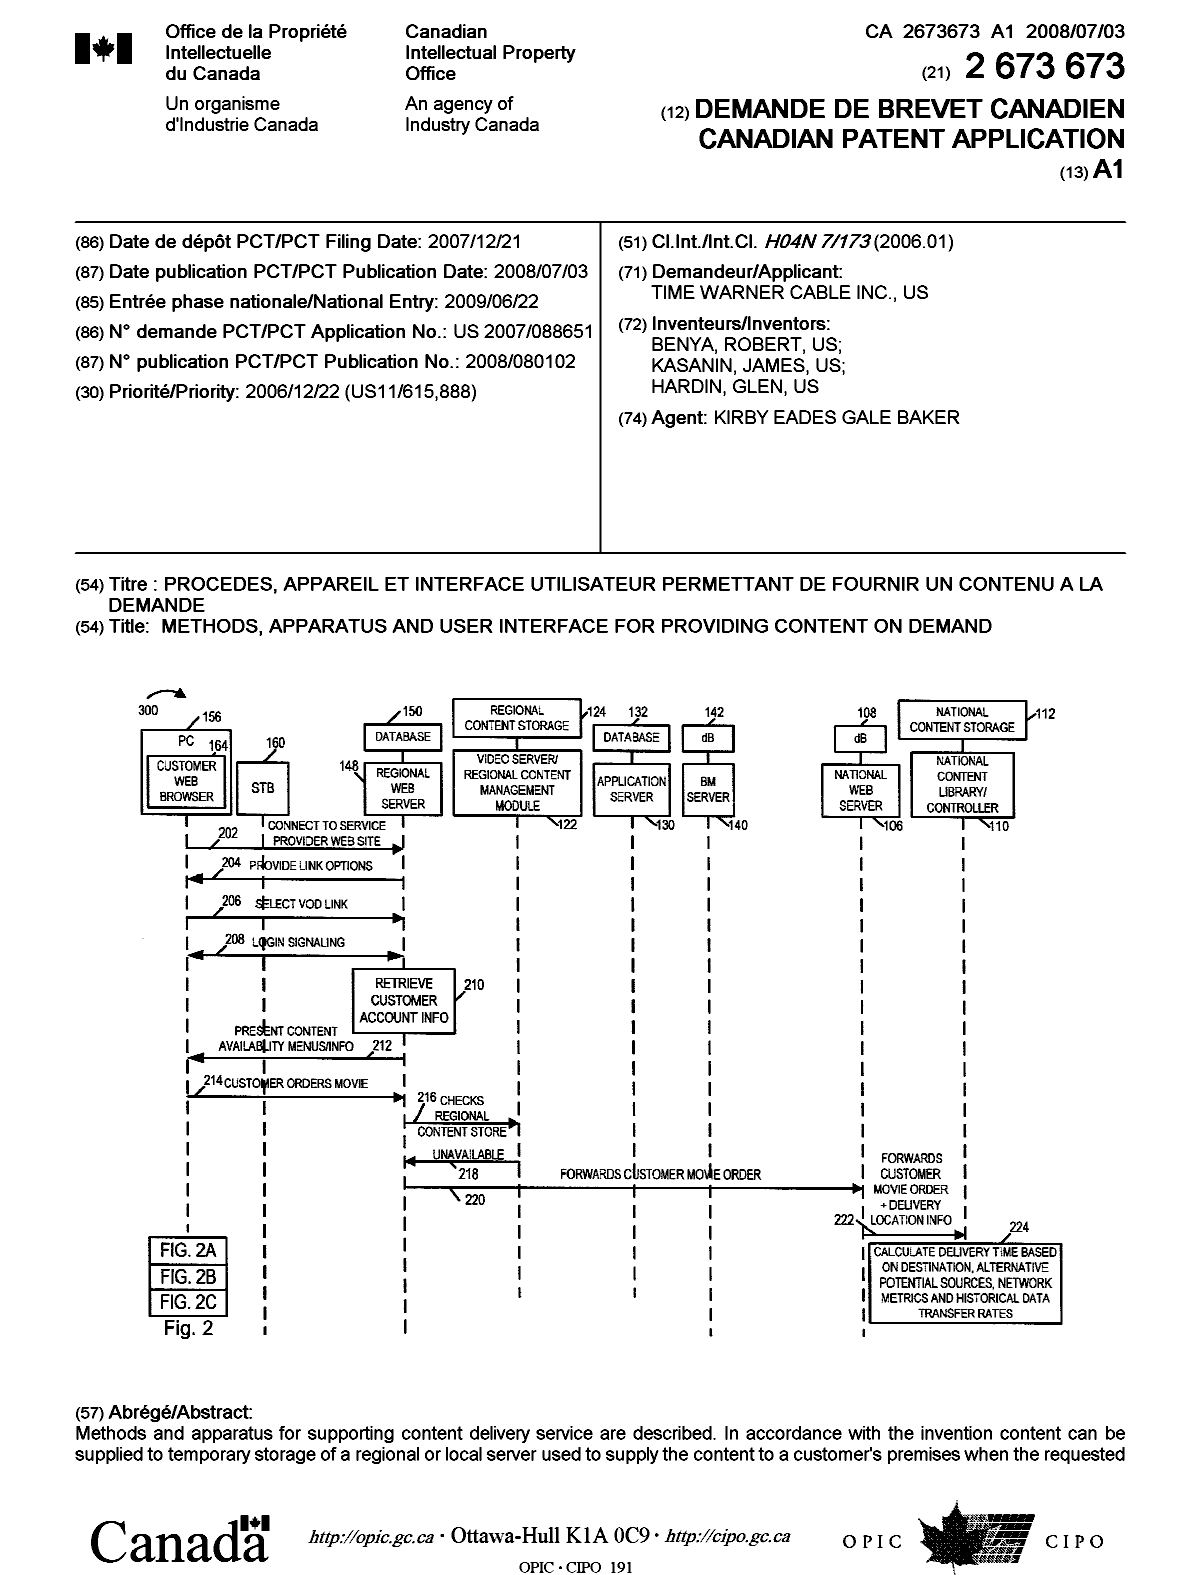 Document de brevet canadien 2673673. Page couverture 20091002. Image 1 de 2